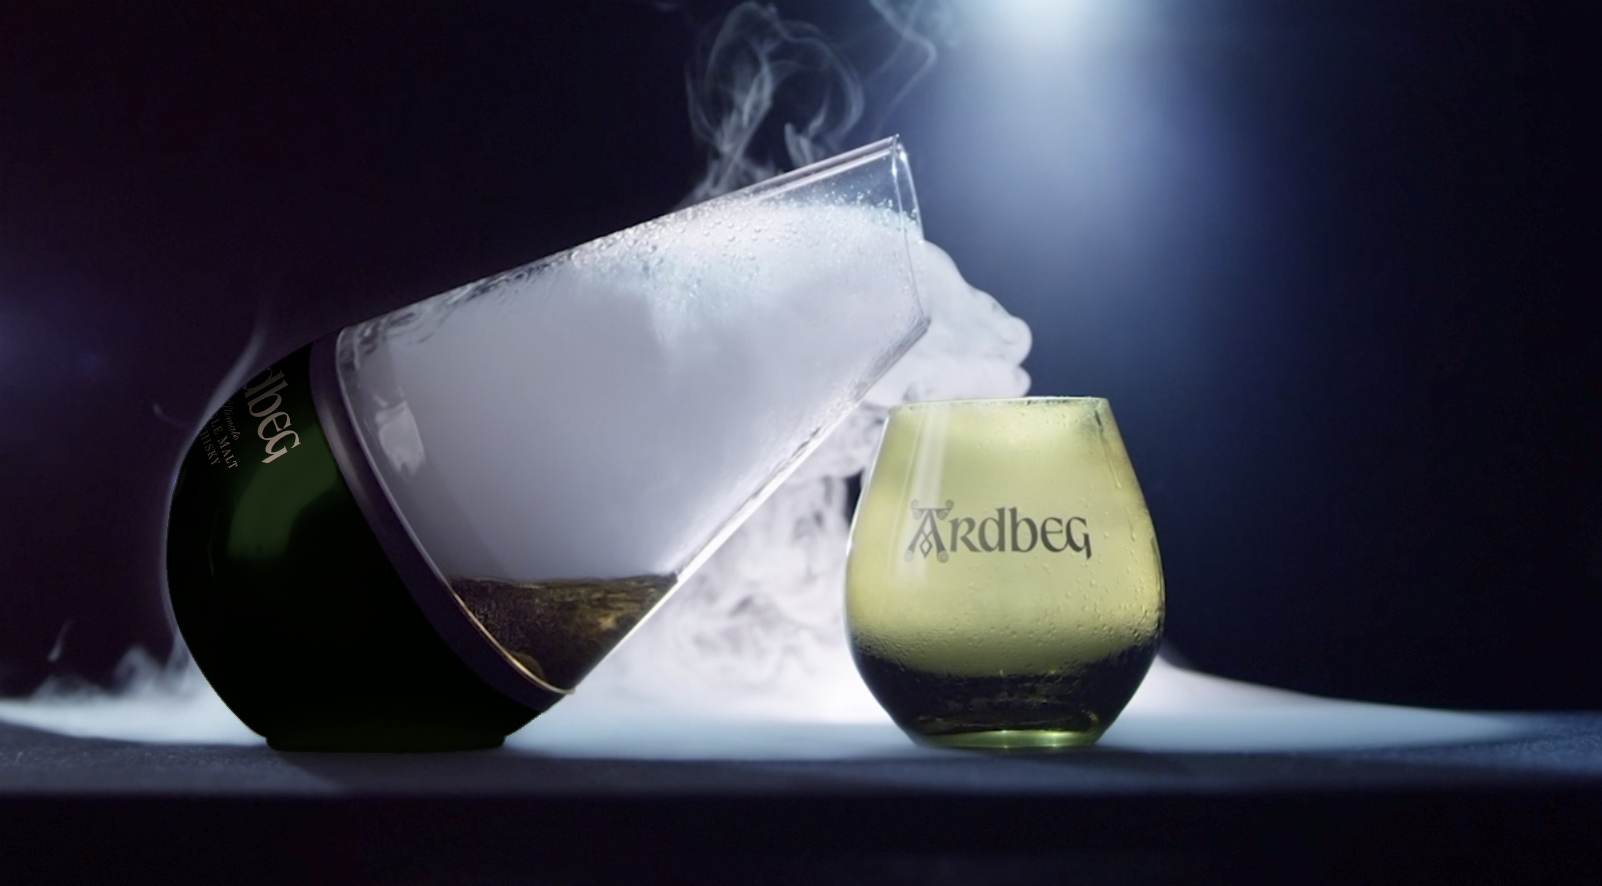 Milano Whisky Festival 2015: Ardbeg presenta Haar, l’esclusivo decanter che genera una suggestiva nuvola